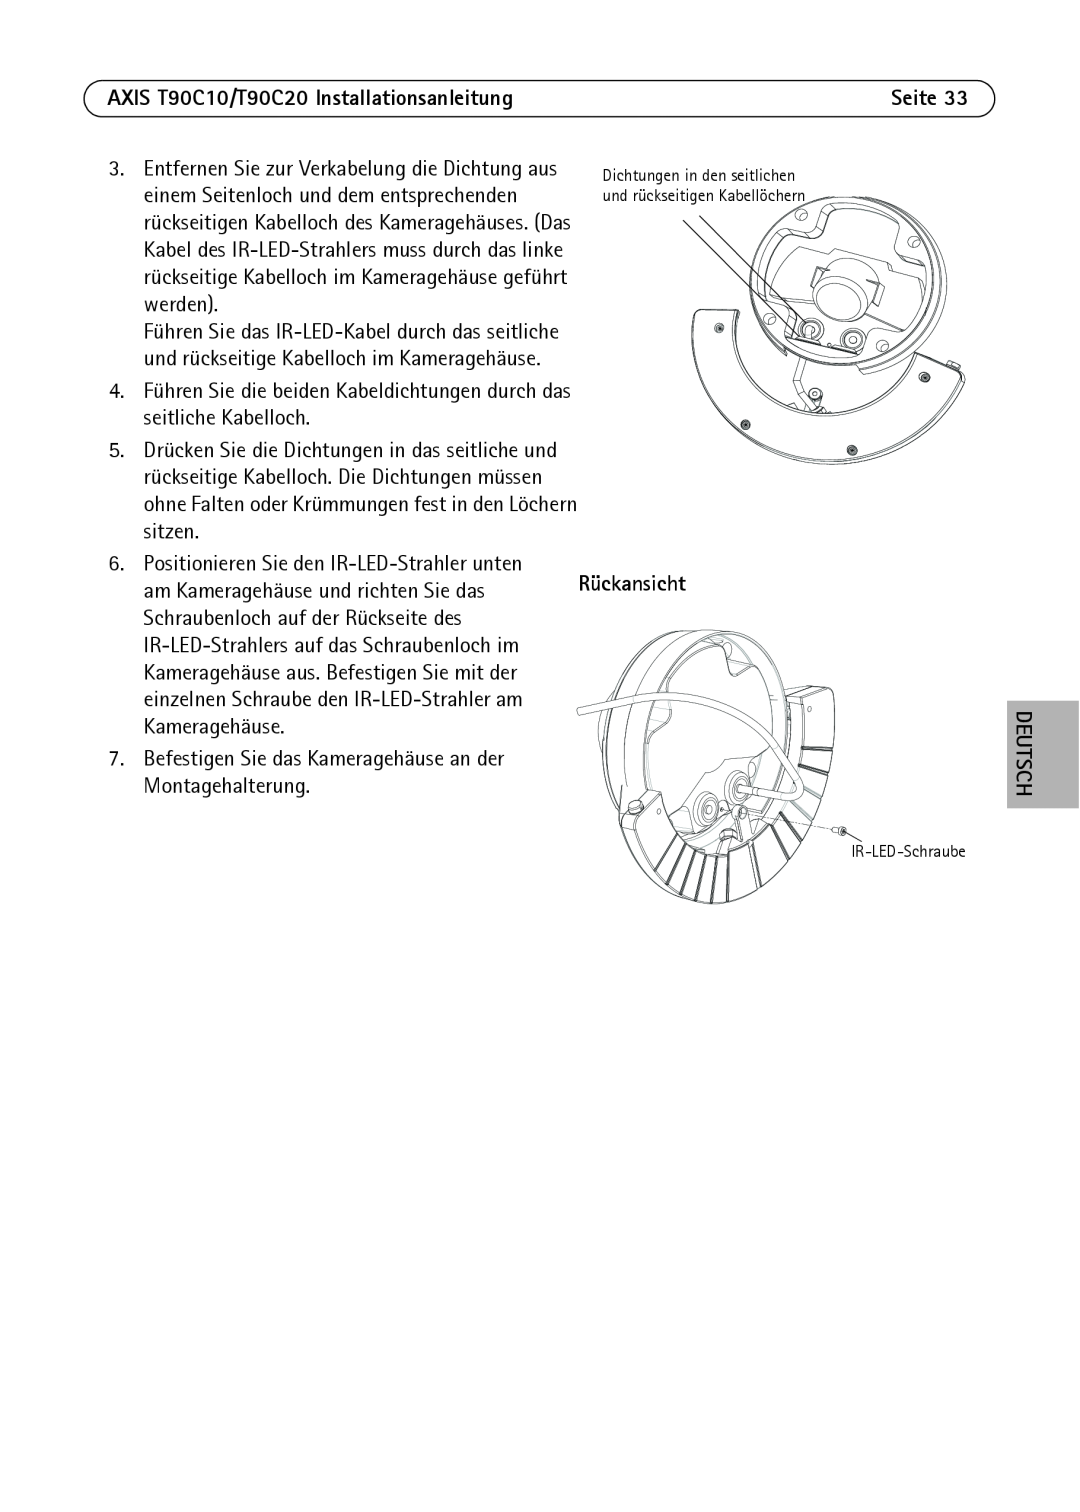 Axis Communications manual AXIS T90C10/T90C20 Installationsanleitung, Rückansicht, Deutsch, IR-LED-Schraube 